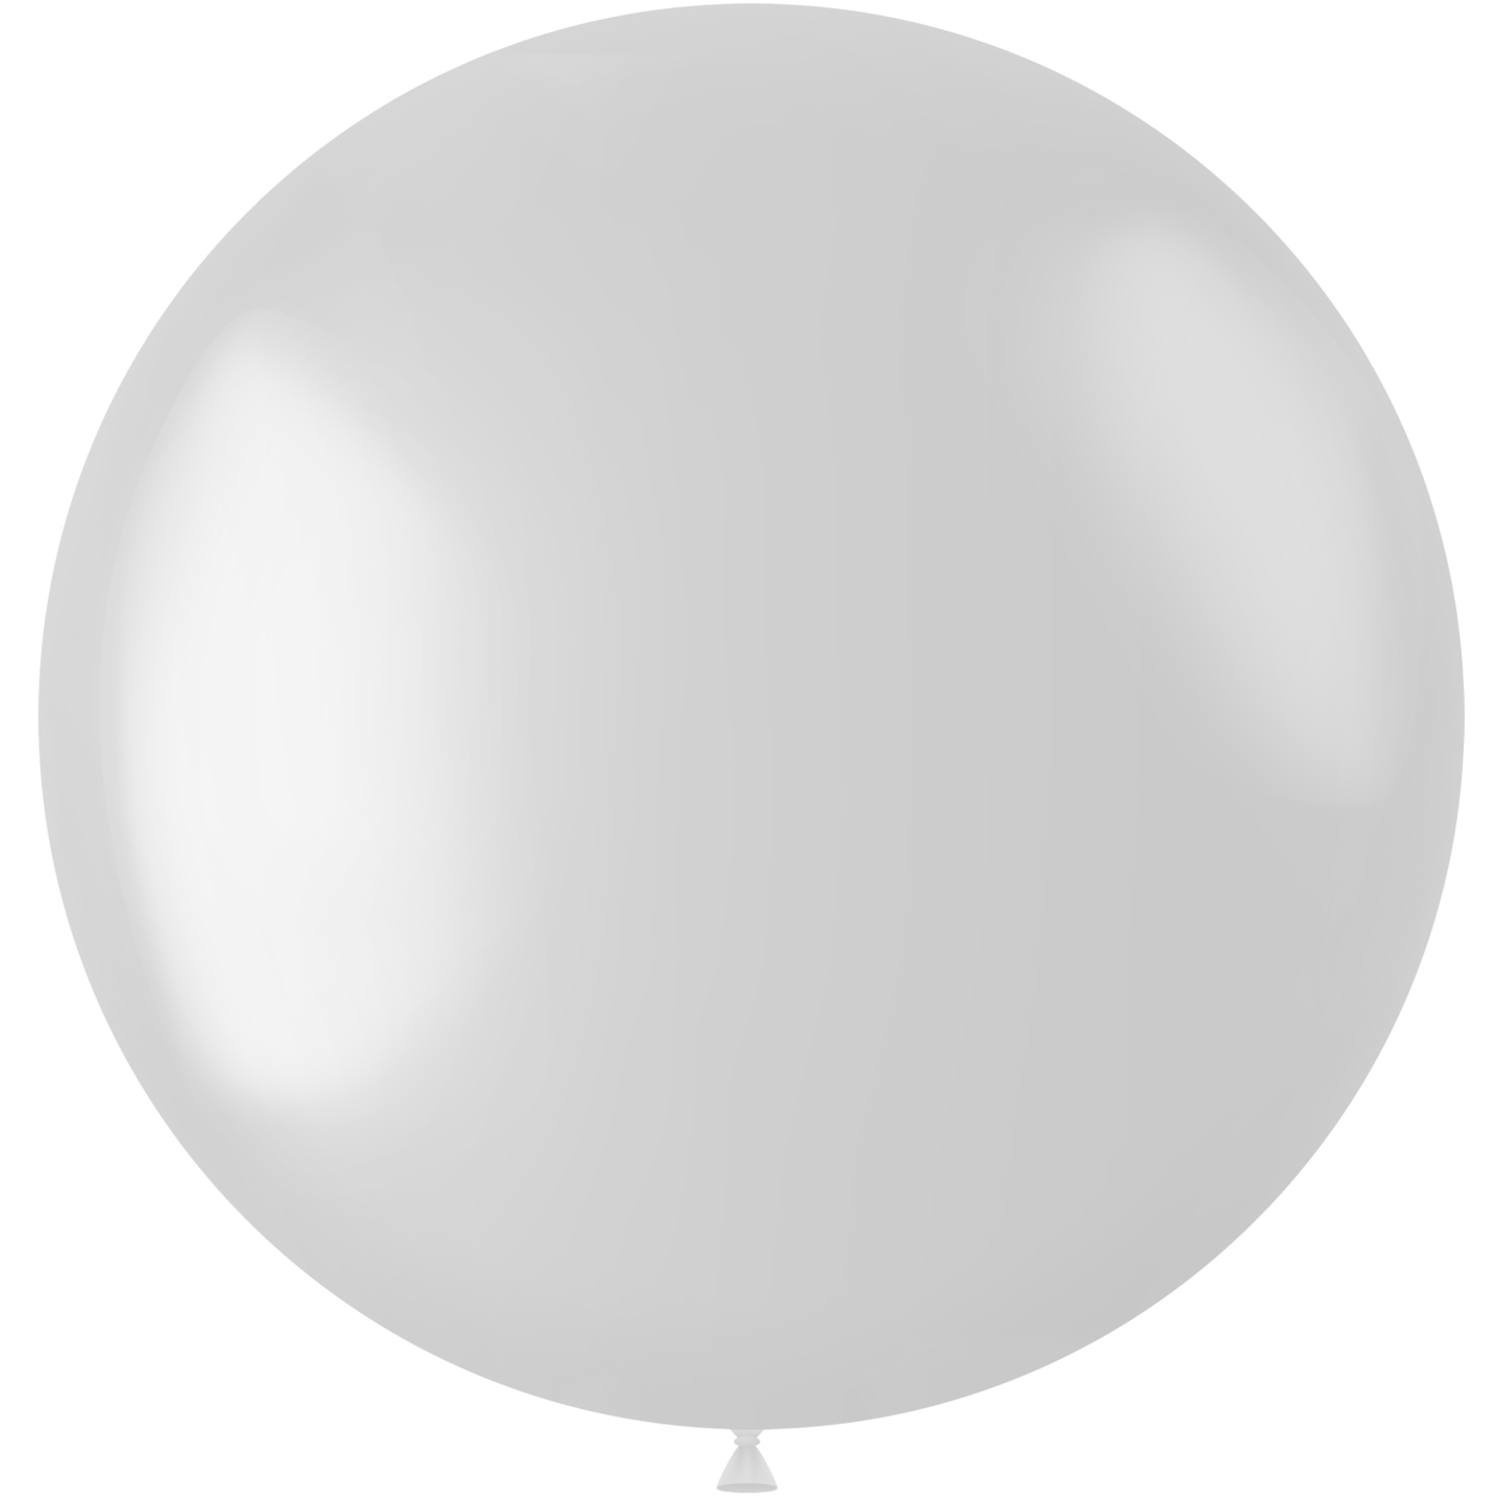 Ballon blanc métallisé blanc nacré 78cm - Partywinkel